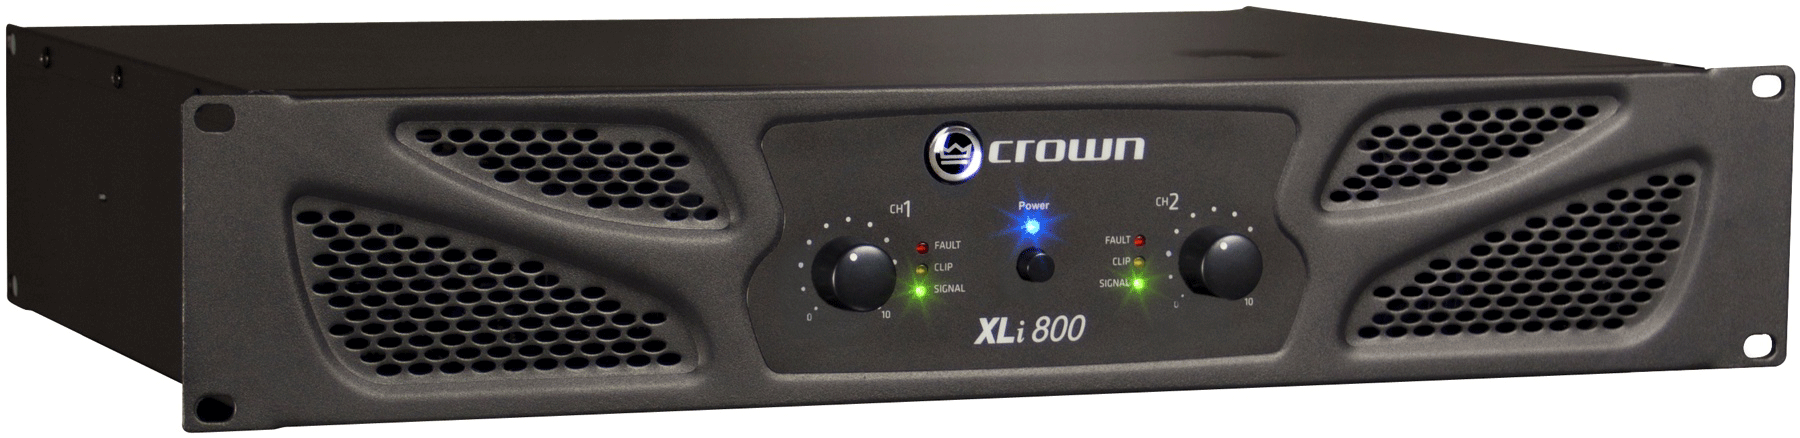 Cục đẩy công suất Crown XLi 800